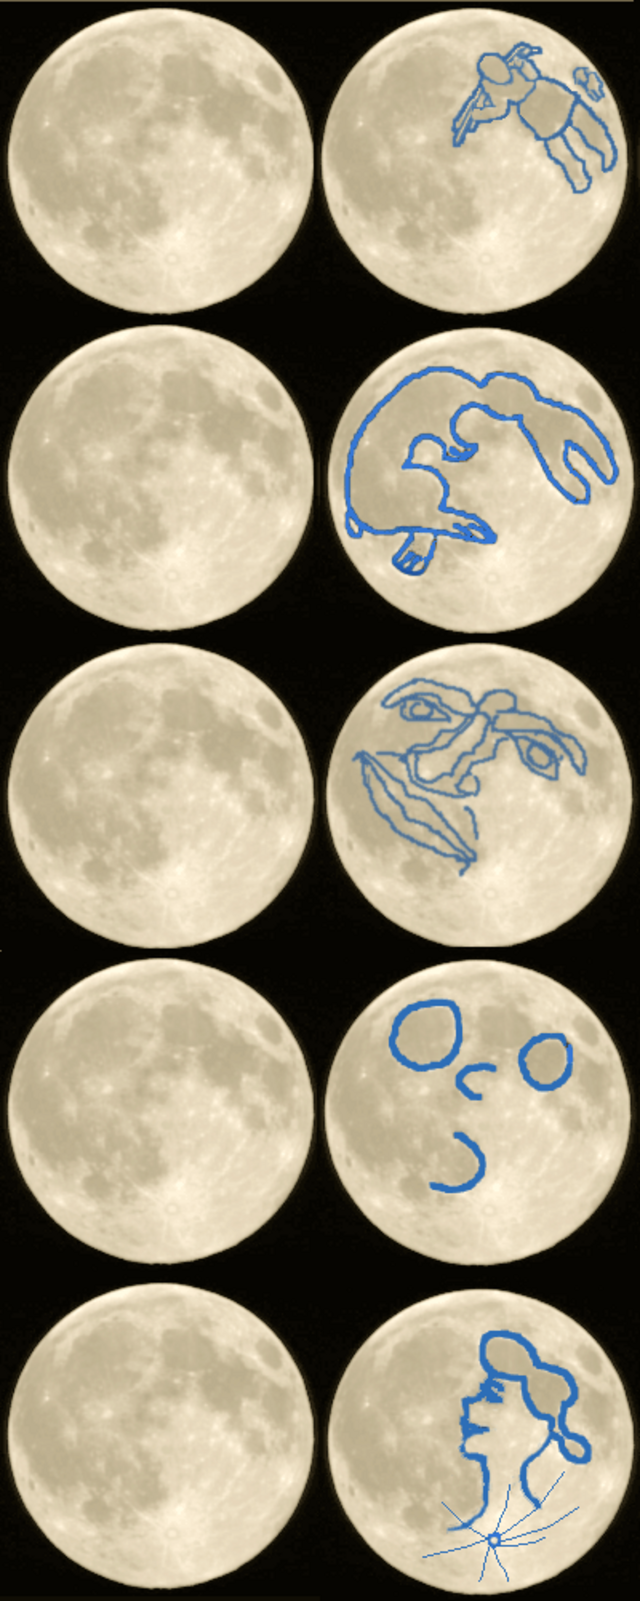 Desenhos que se observam na superfície Lua